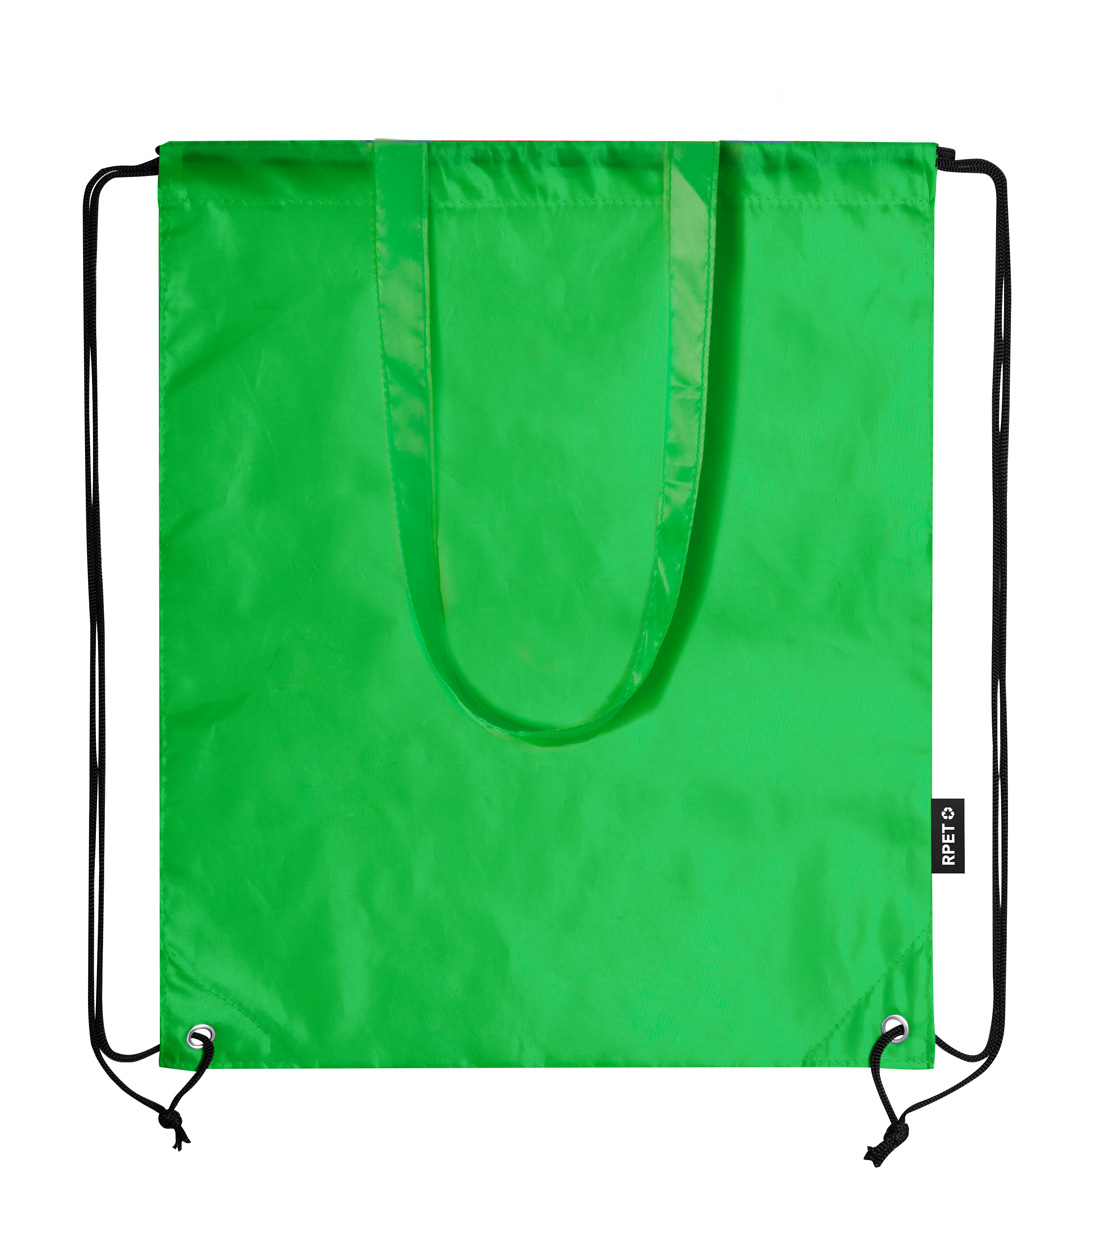 Falyan RPET drawstring bag - green